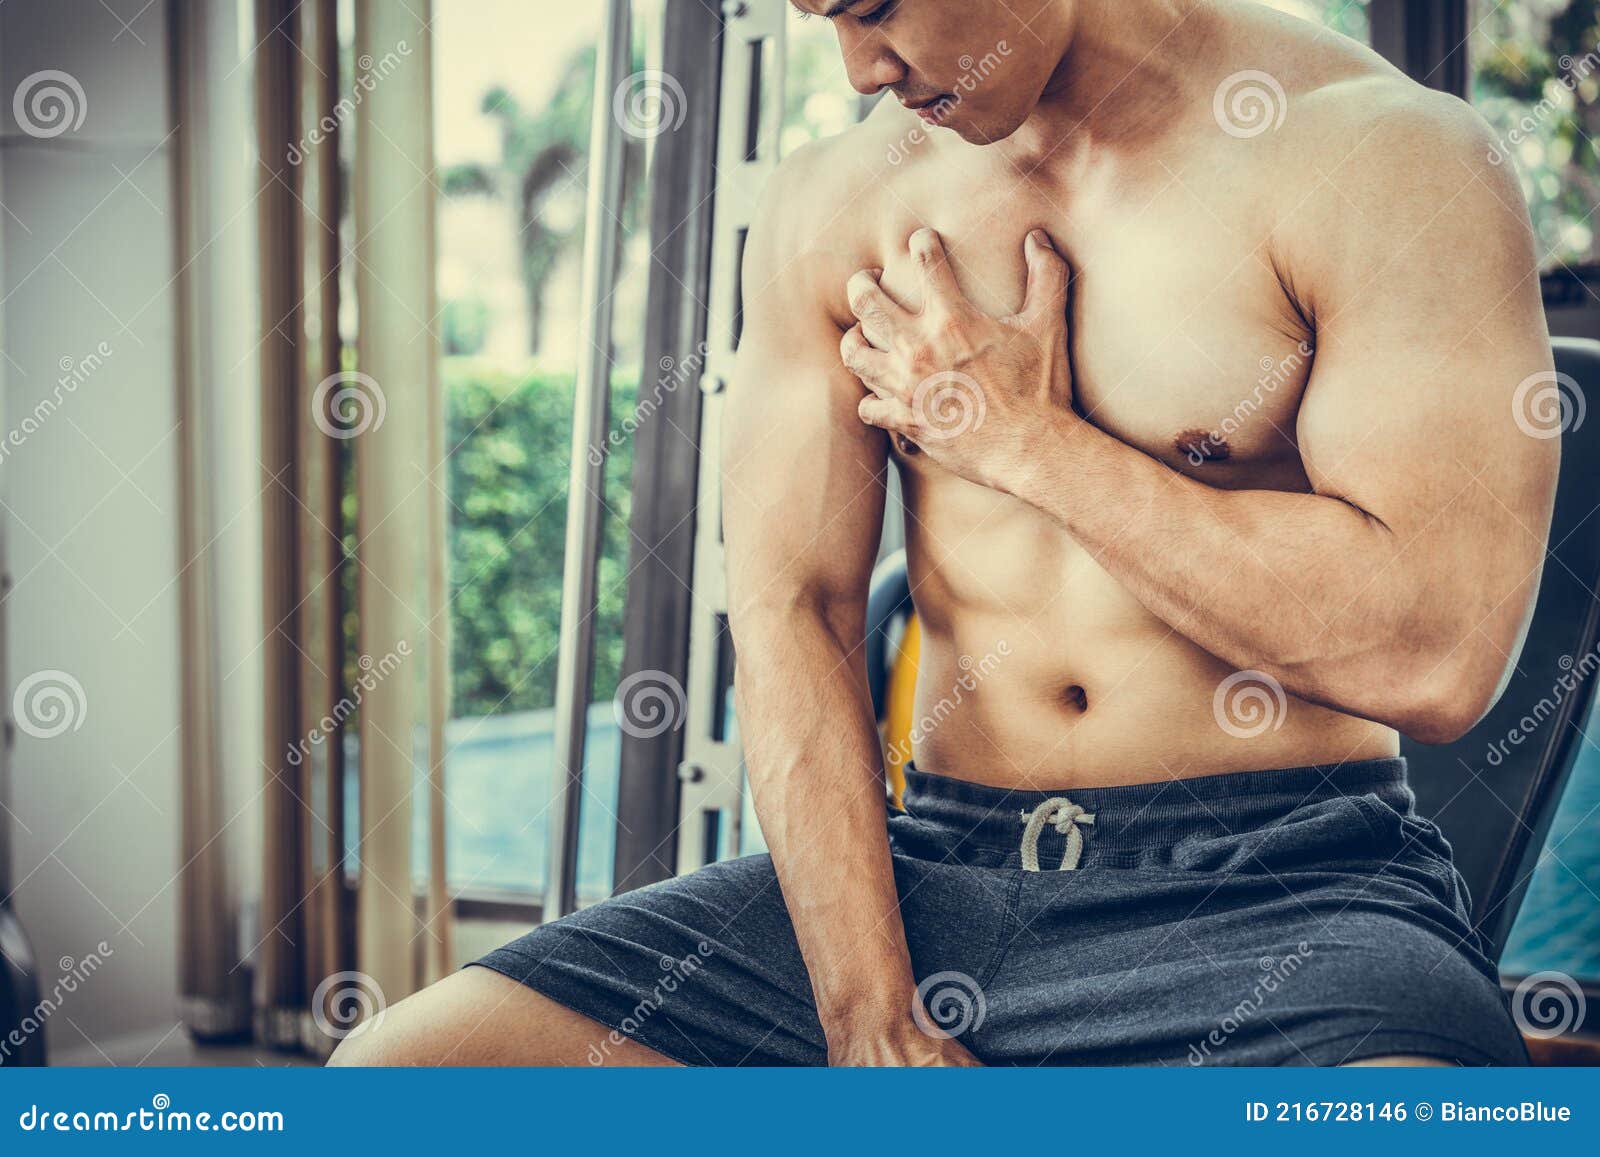 мускулистый мужчина трогает грудь в фитнес-центре. Стоковое Фото - изображение насчитывающей модель, мышца: 216728146